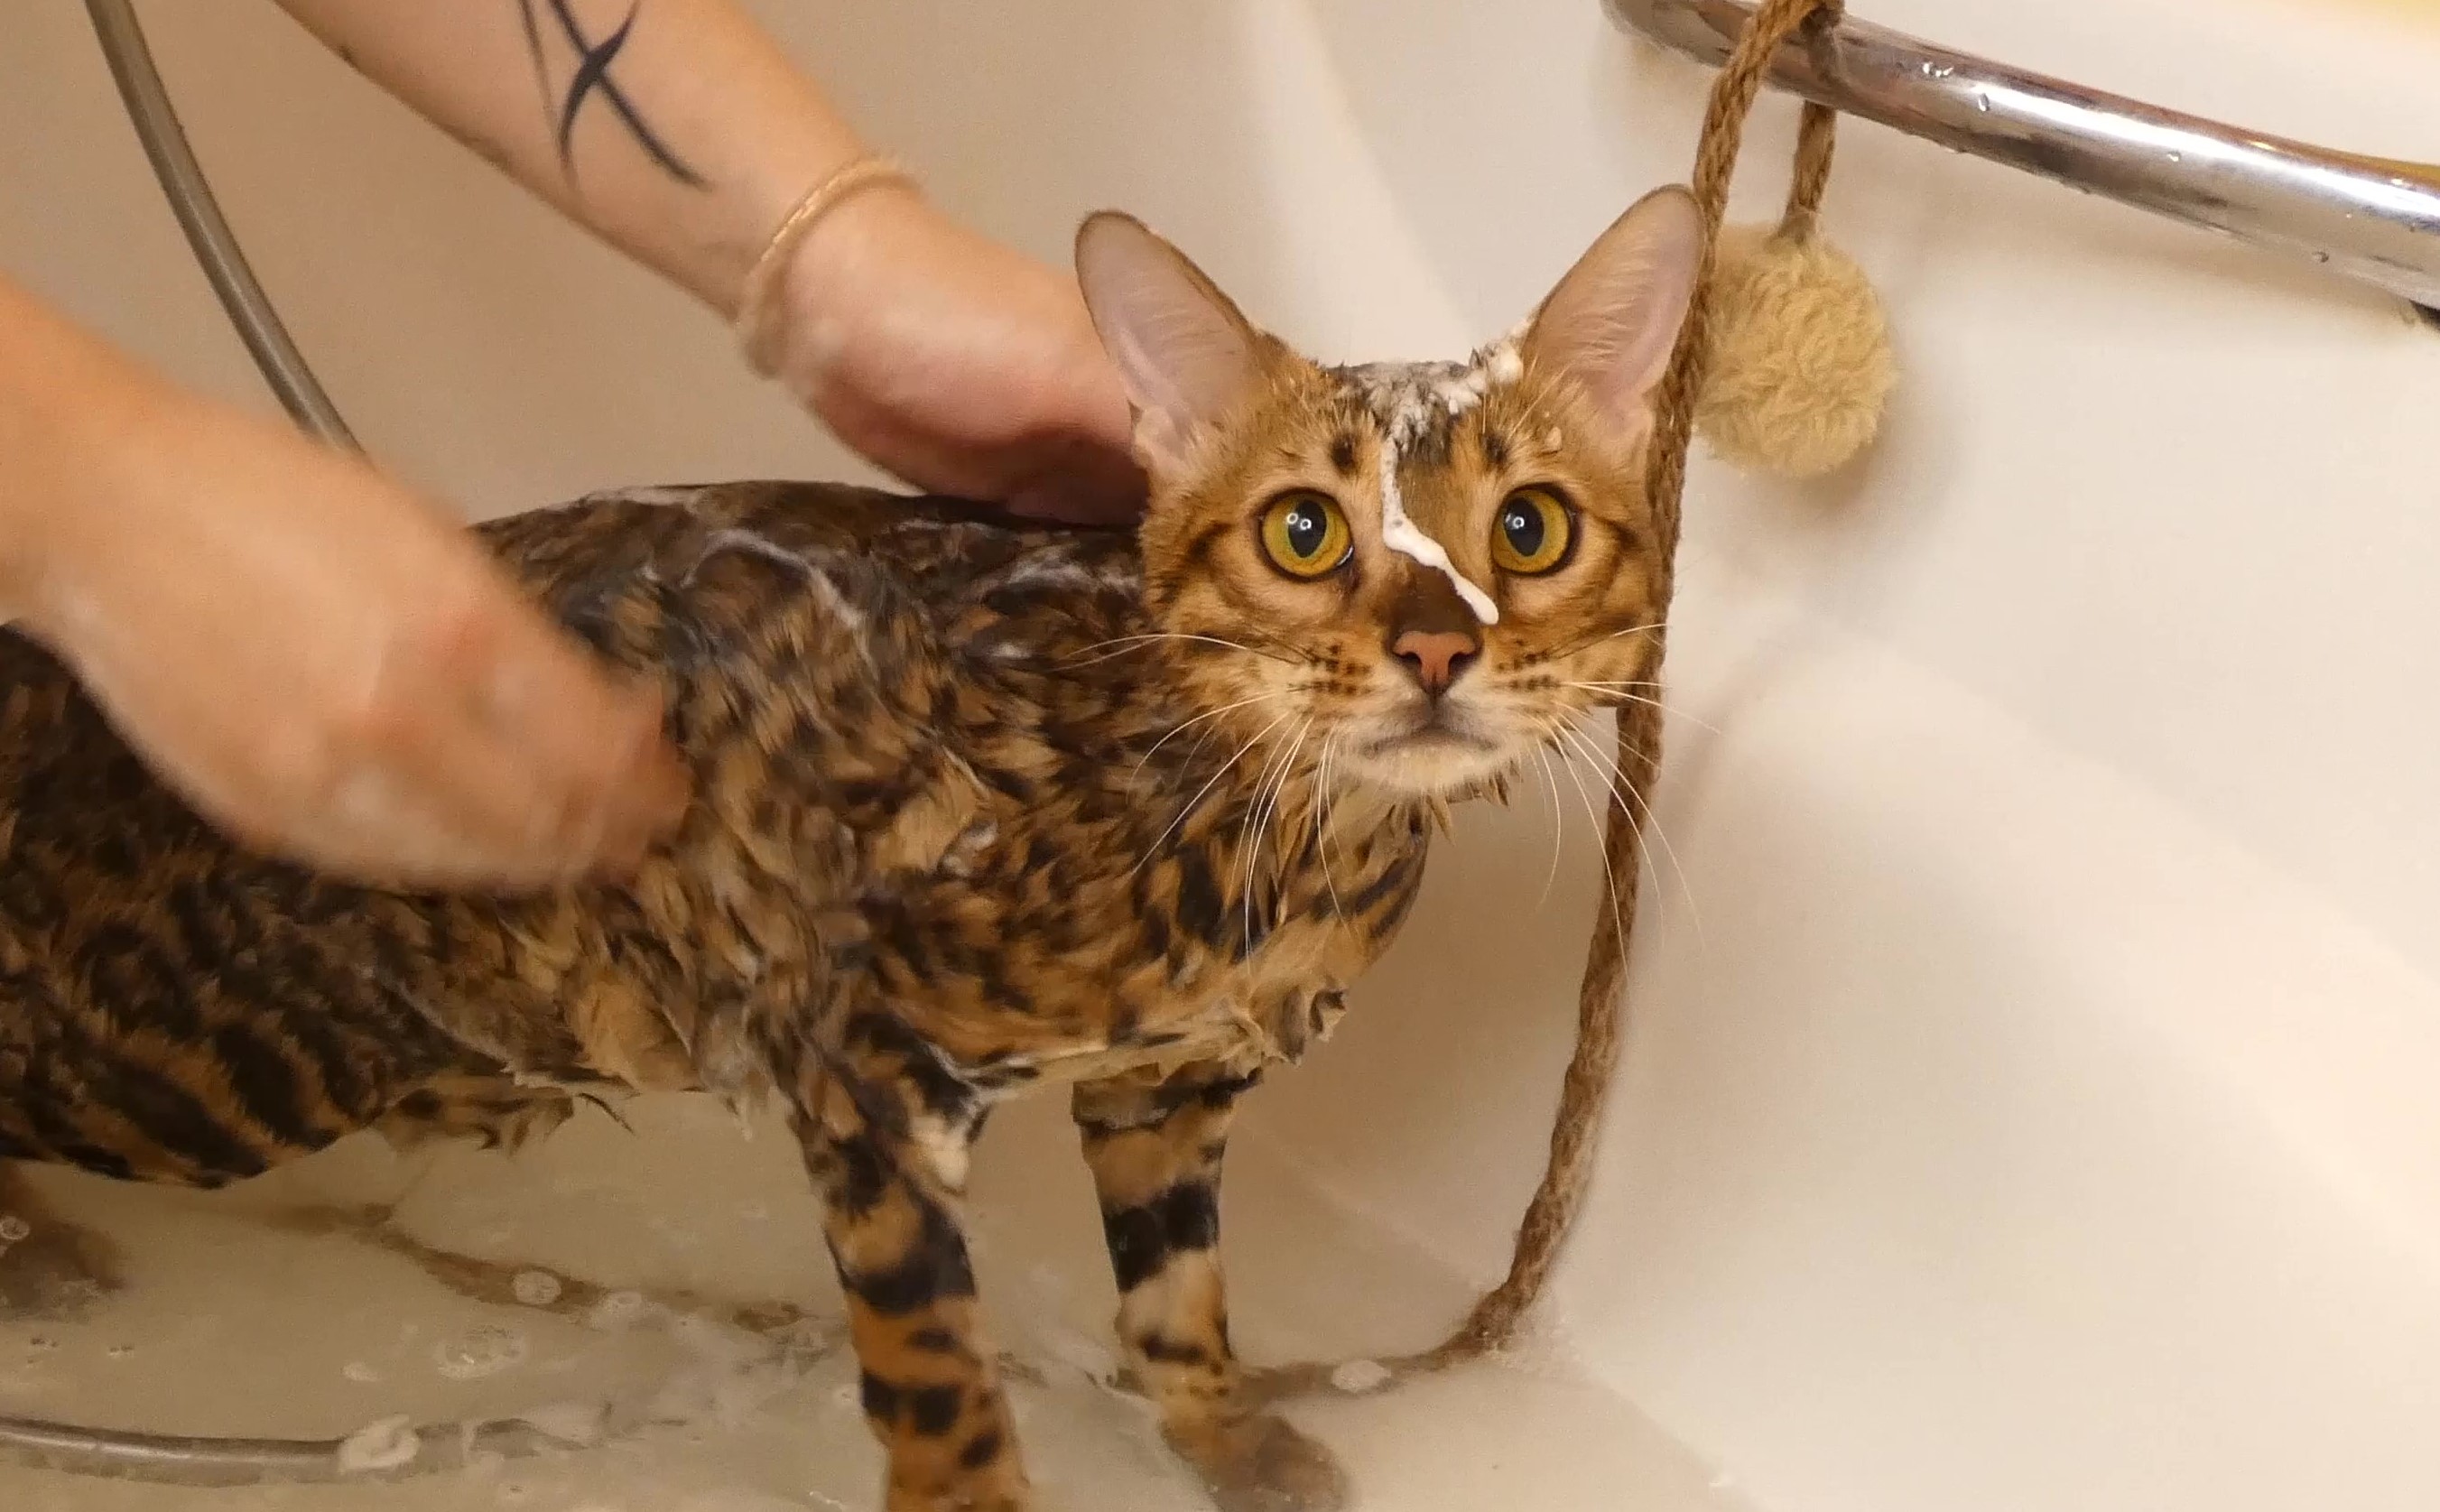 купание кошки